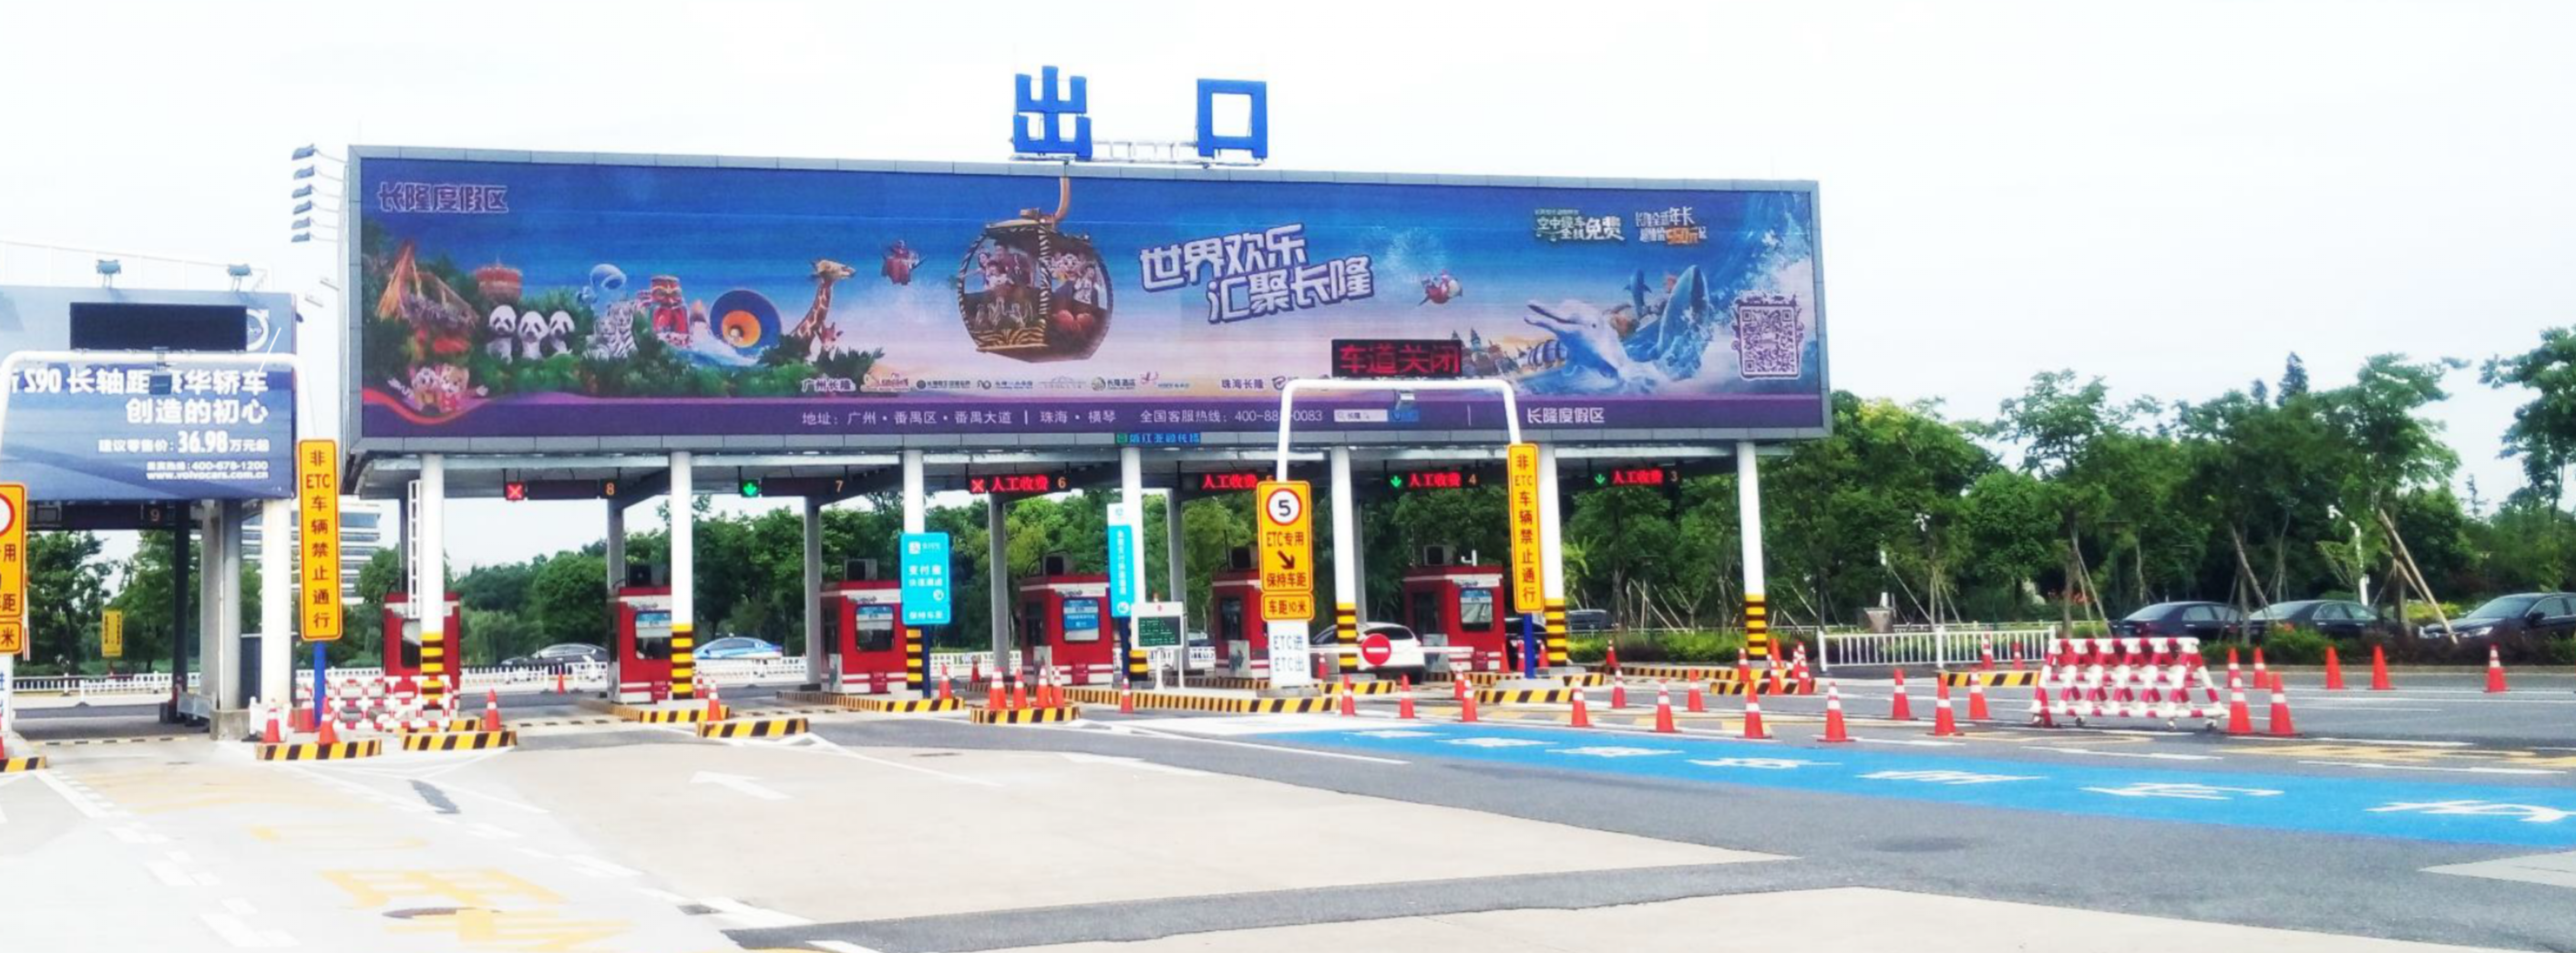 杭州萧山机场广告-航站楼总出口收费站上方LED大屏